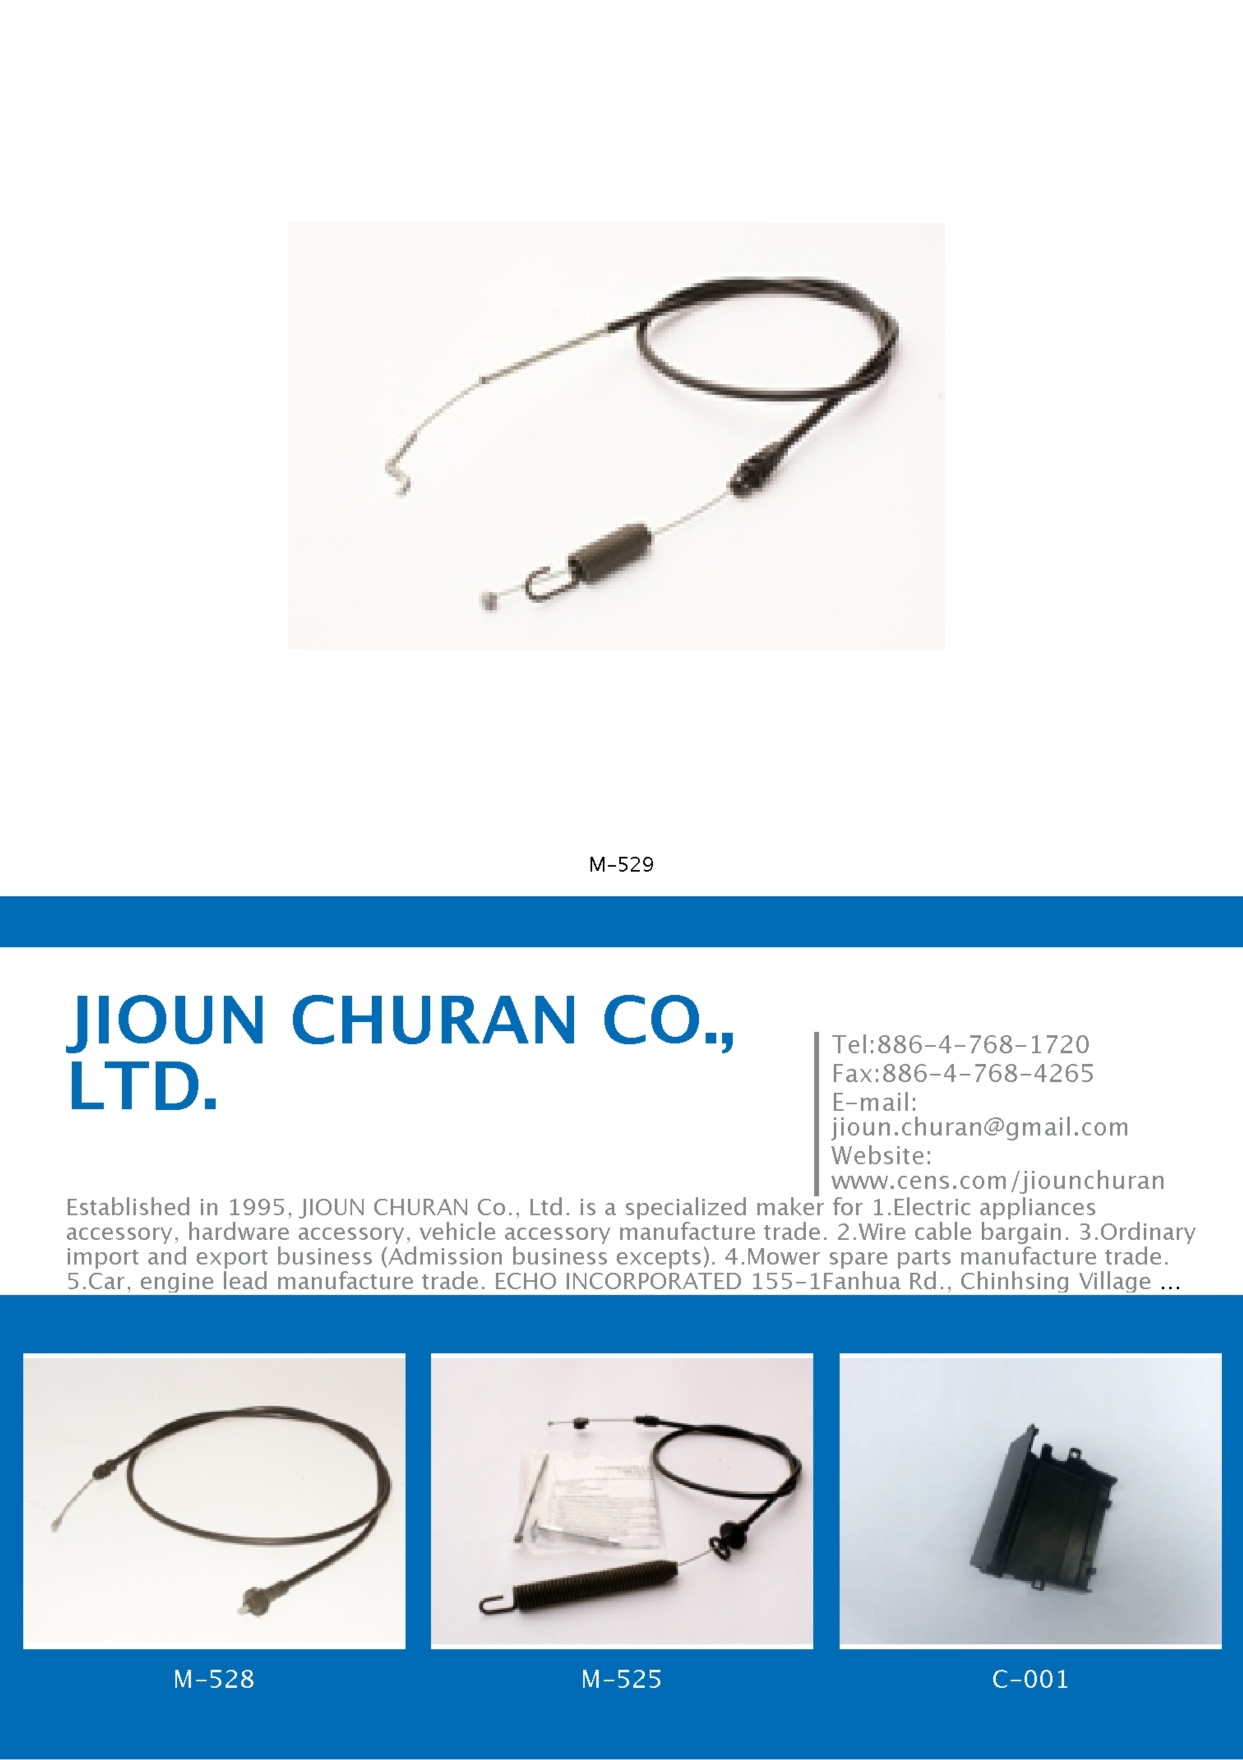 JIOUN CHURAN CO., LTD.